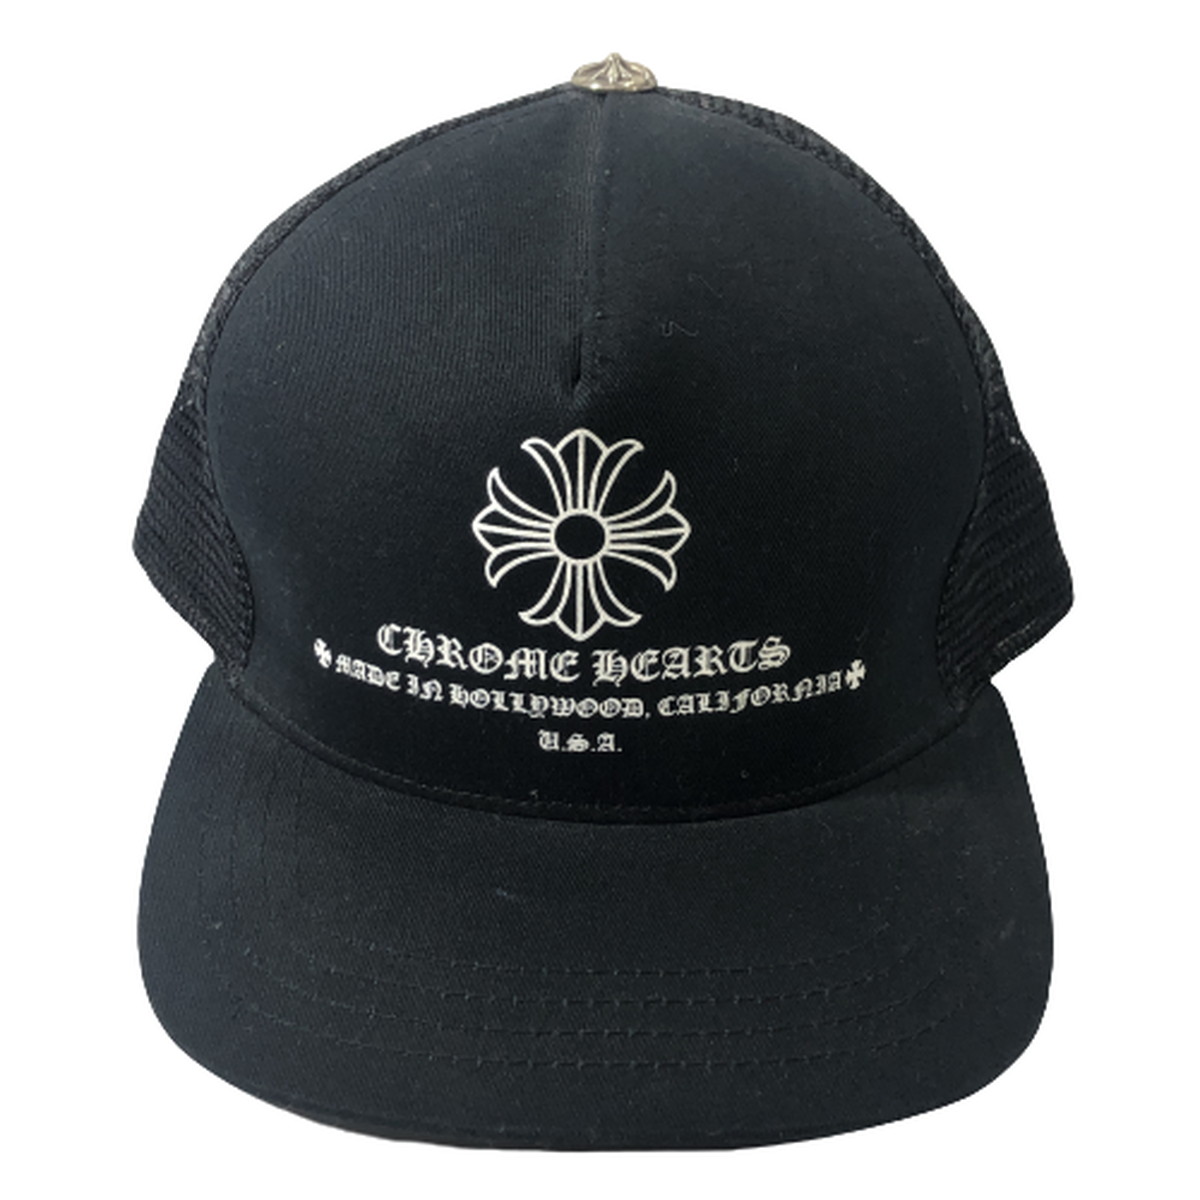 クロムハーツ CHROME HEARTS キャップ トラッカー メッシュ CHプラス PRINTED TRUCKER CAP 黒 帽子 画像